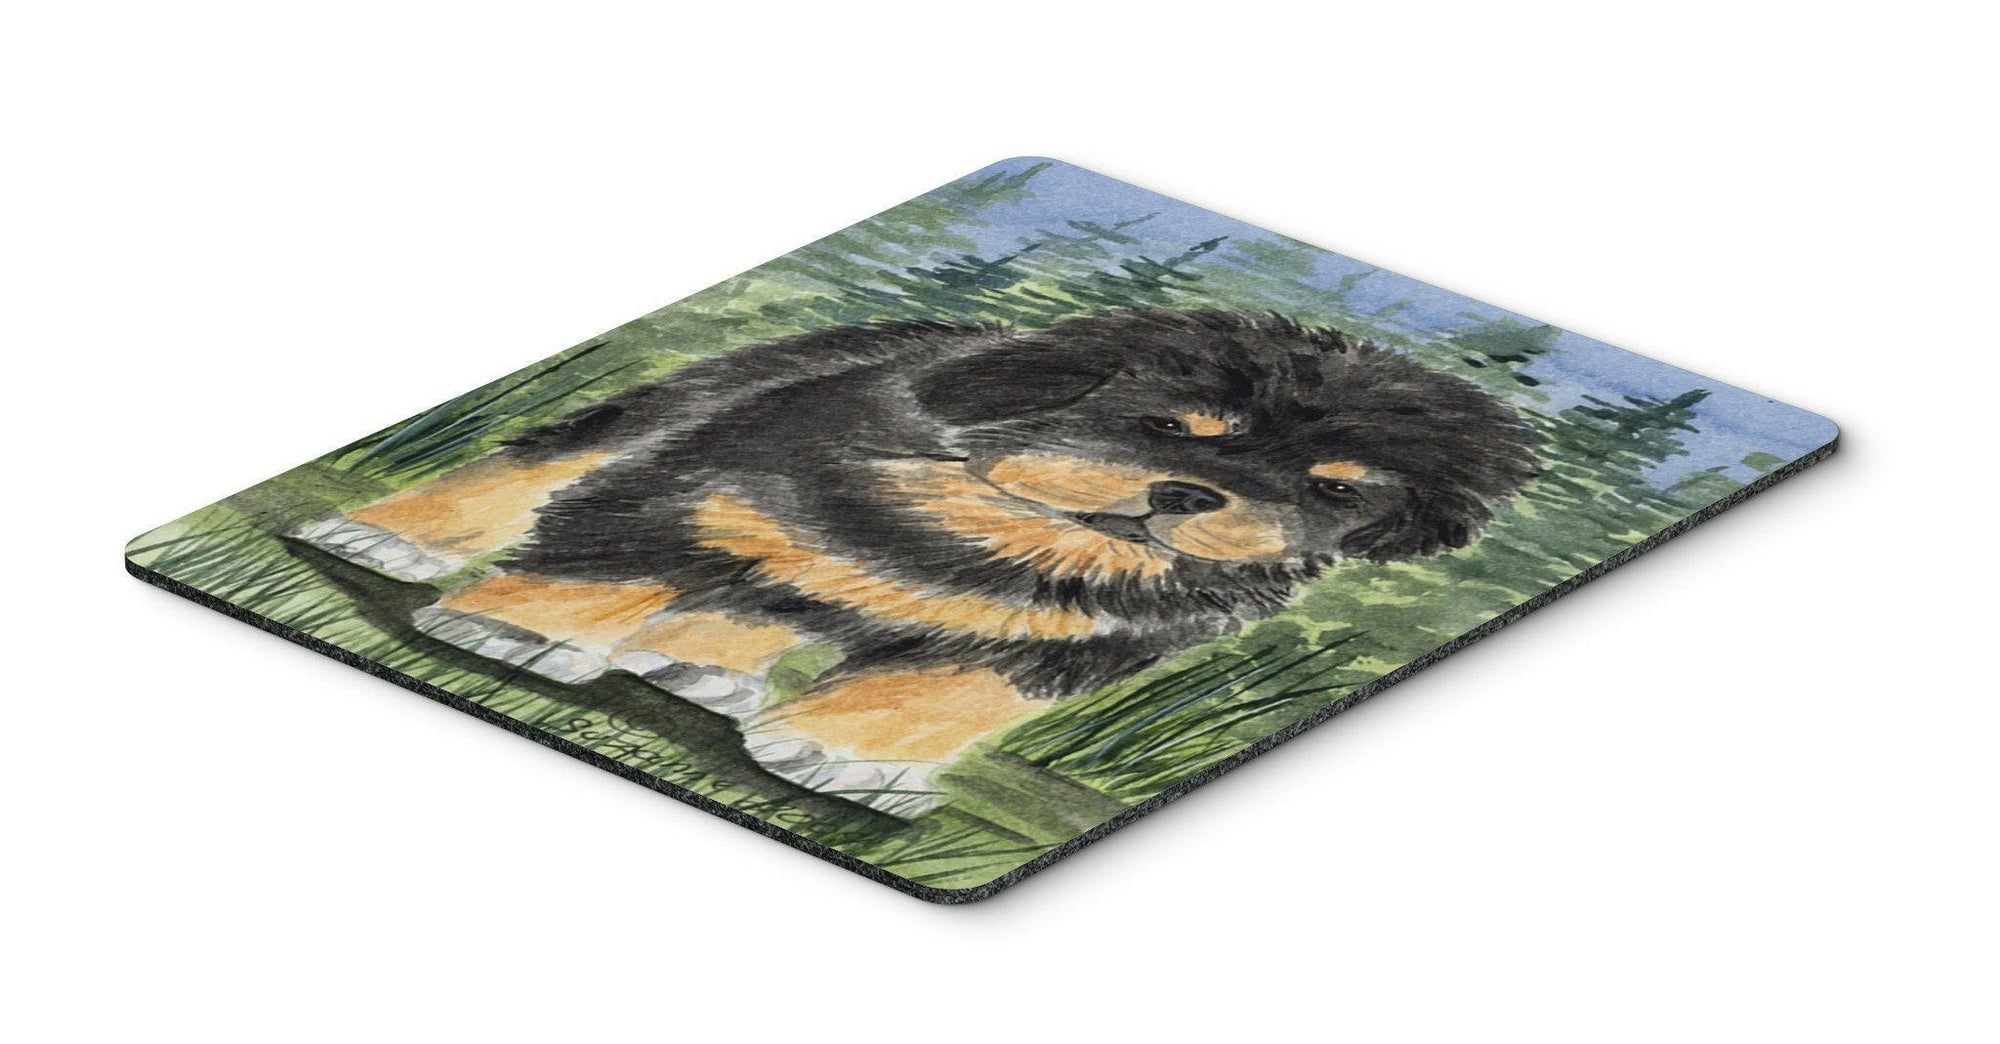 Tibetan Mastiff Mouse Pad / Hot Pad / Trivet by Caroline's Treasures